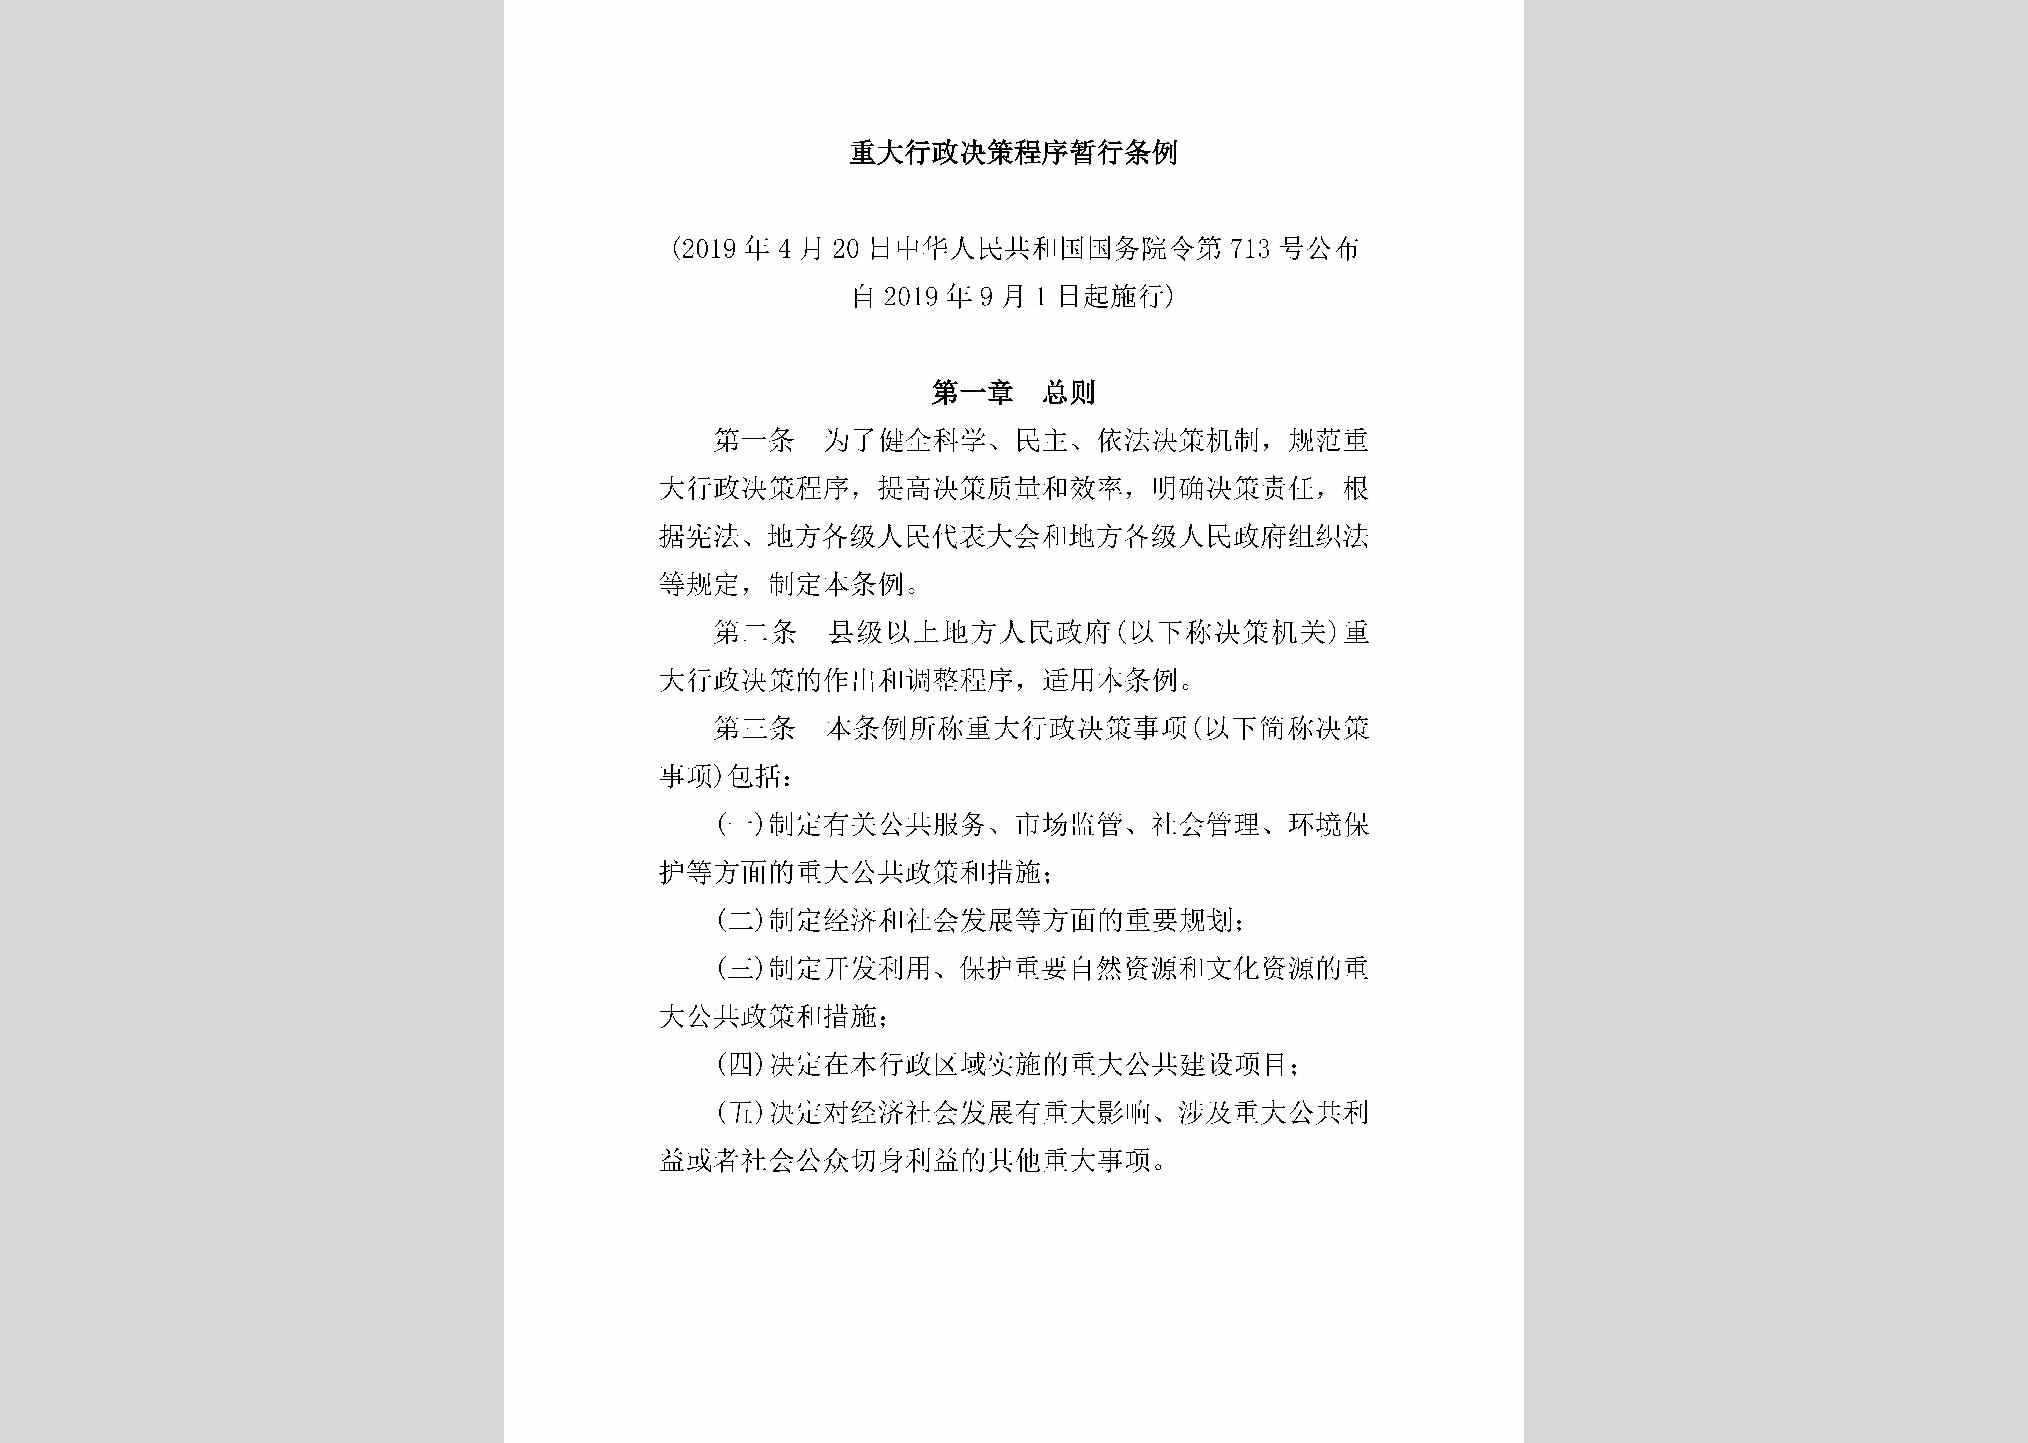 中华人民共和国国务院令第713号：重大行政决策程序暂行条例